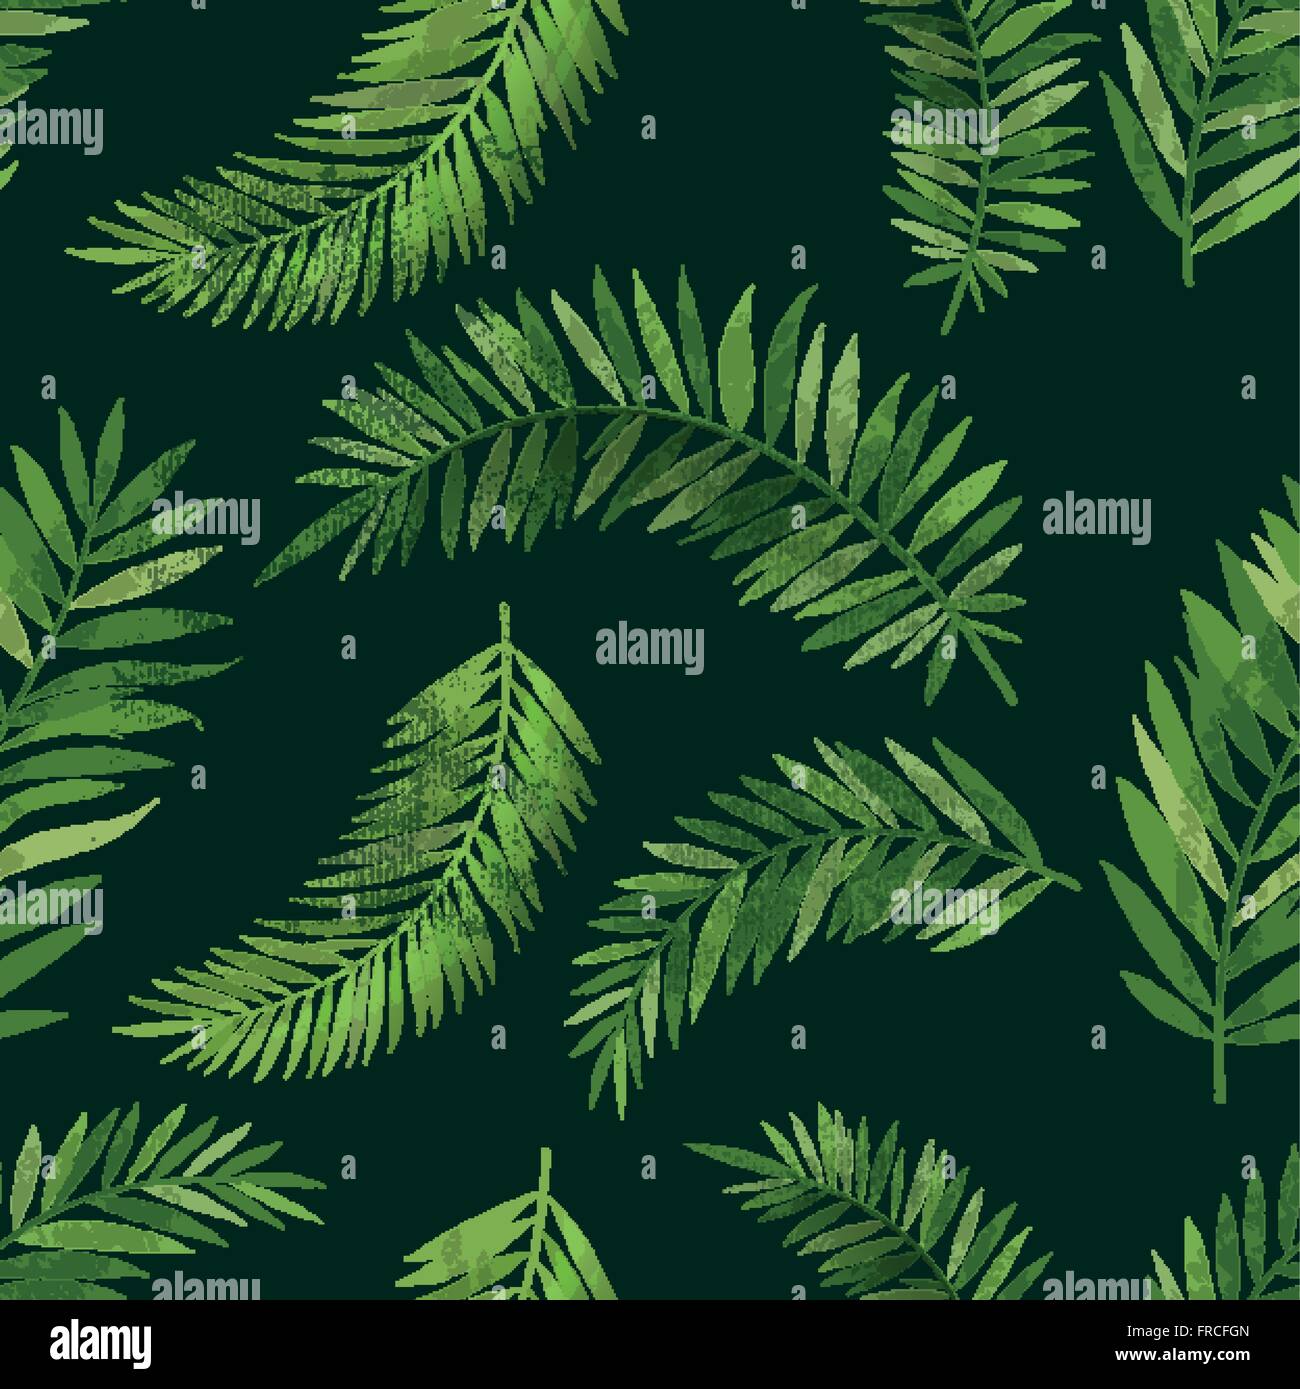 Vintage nahtlose tropischer Palmen Blatt-Muster mit Textur-Effekt. Vektor-Illustration Hintergrund. Stock Vektor